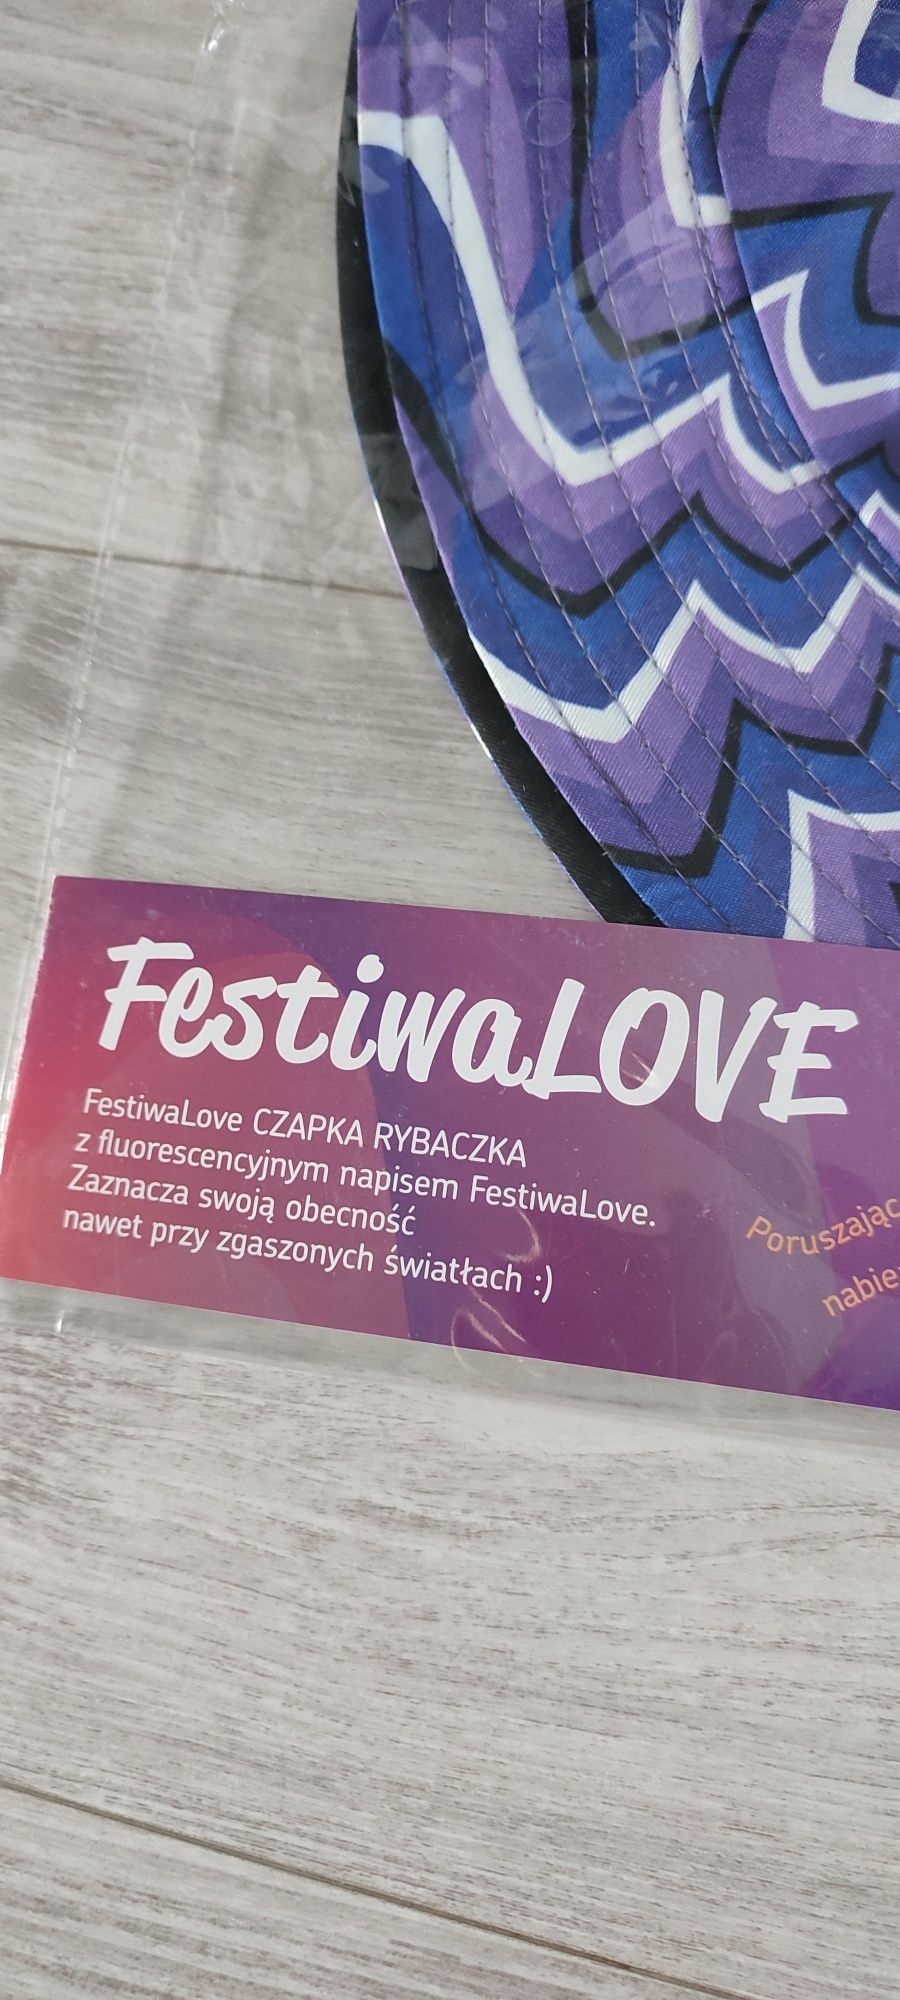 Czapka rybacka kolorowa festiwal Love psycho fluorescencyjny napis